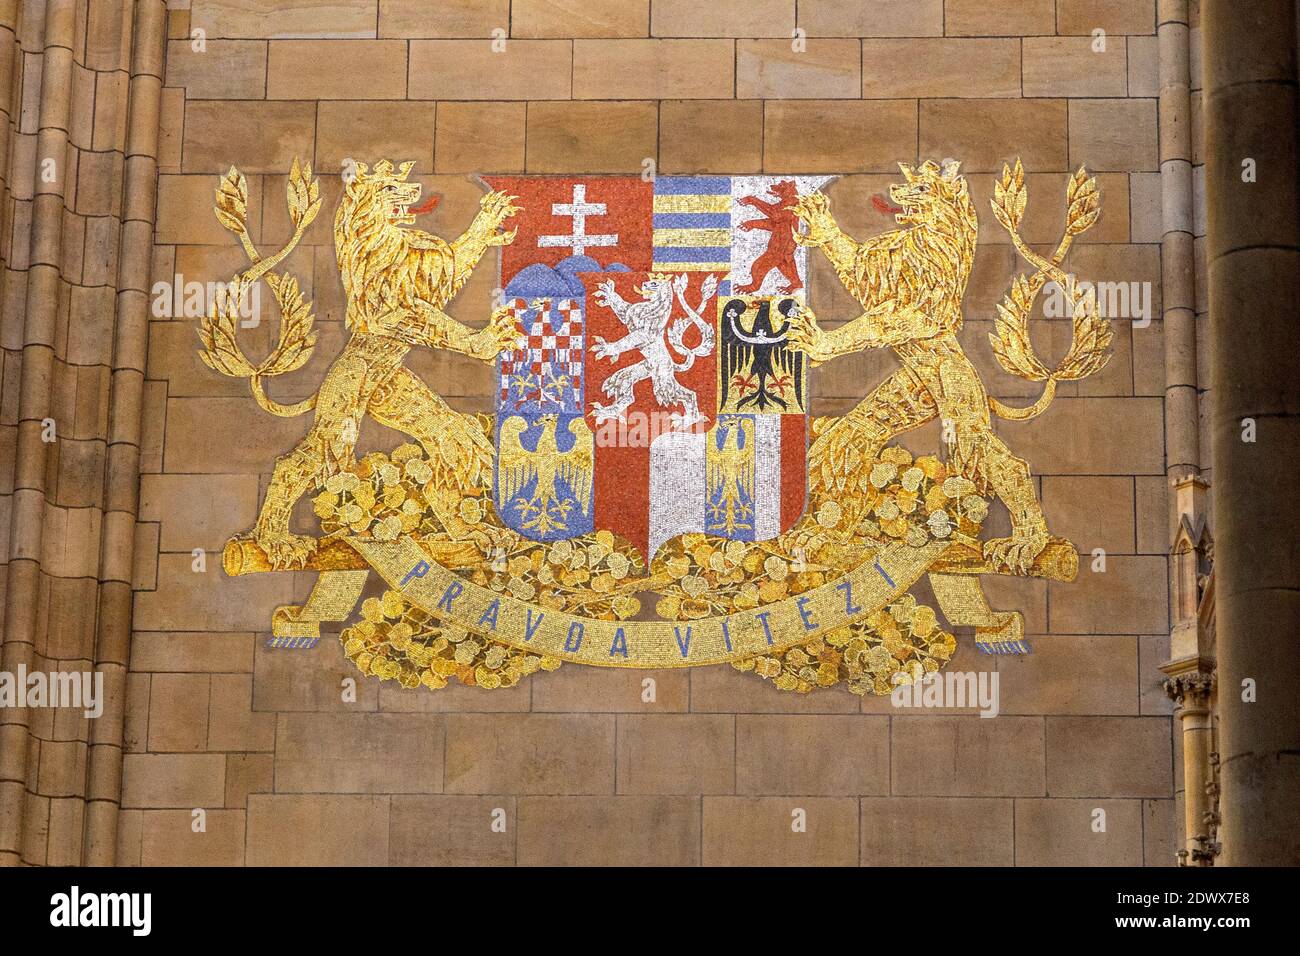 Großes tschechisches Wappen in der Prager Burg, Prag, Tschechien Foto Stock